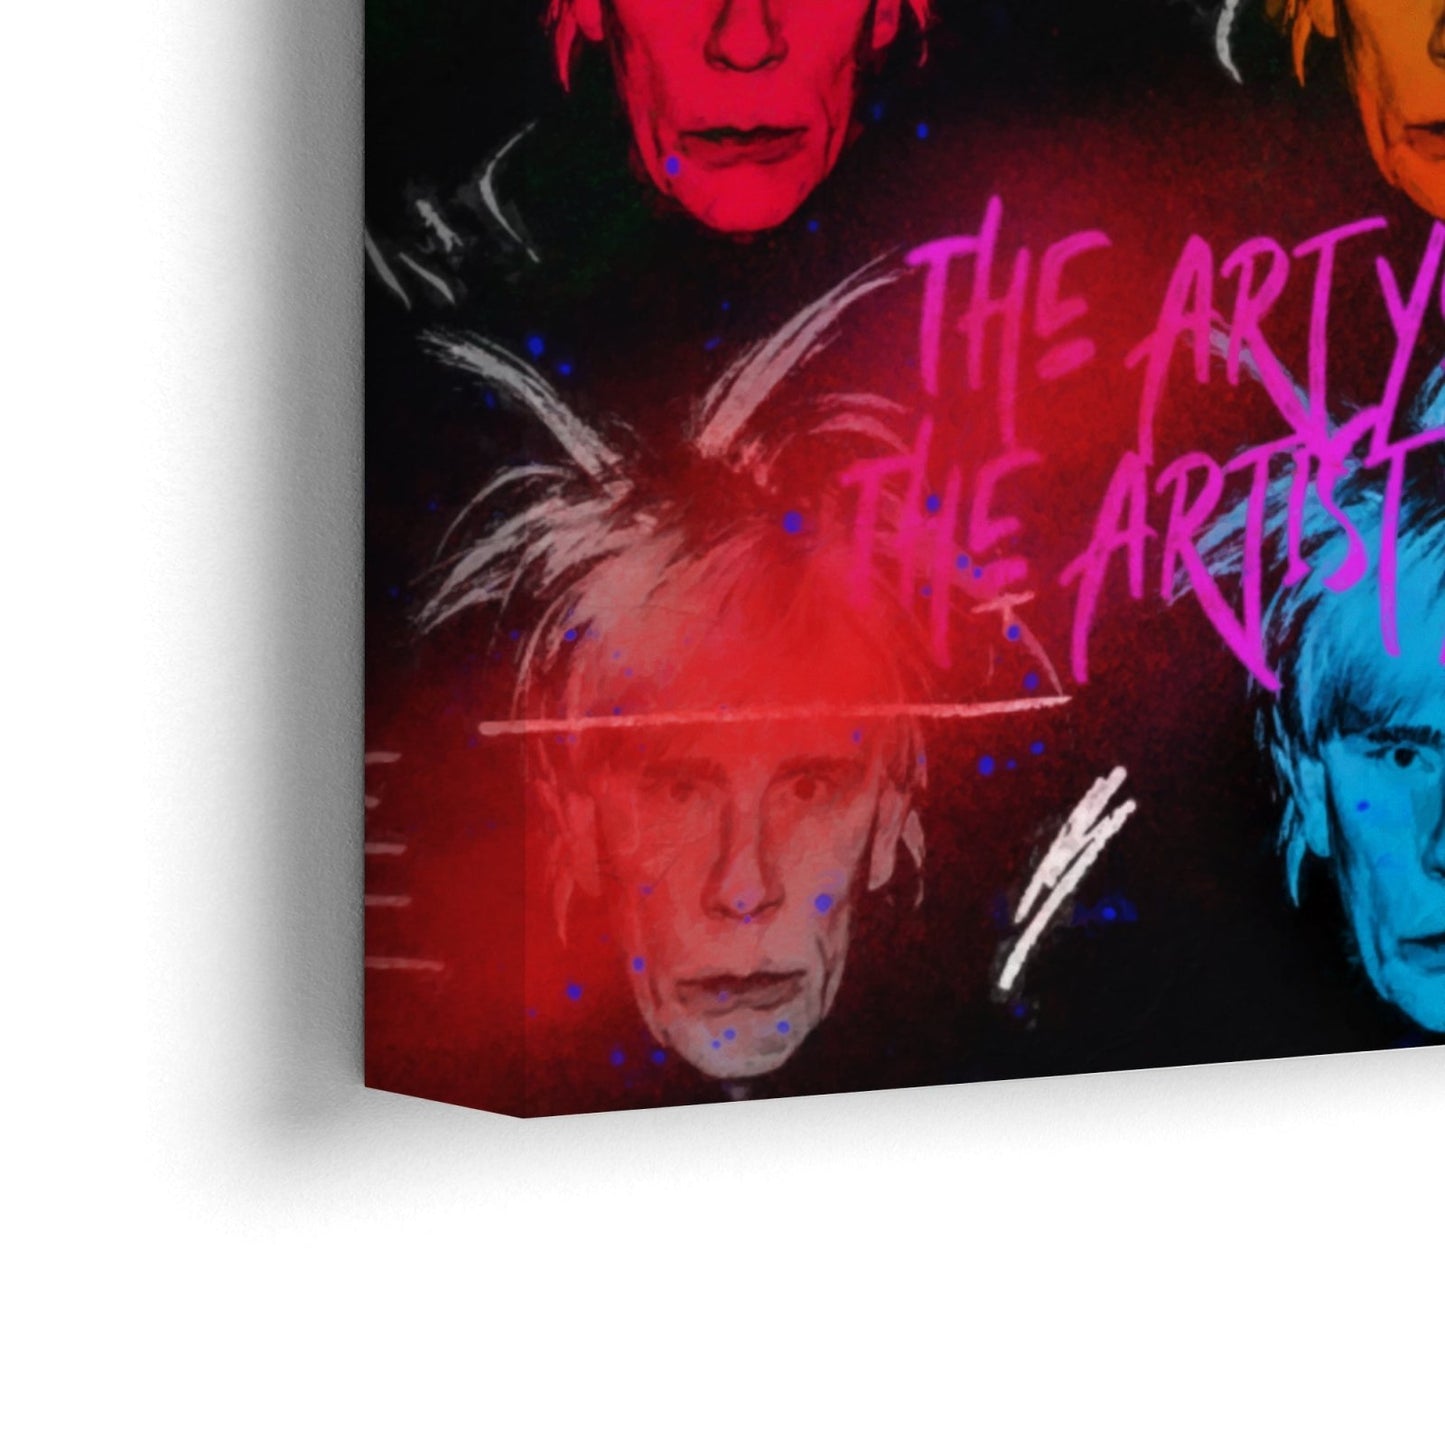 Andy Warhol-zelfportretten